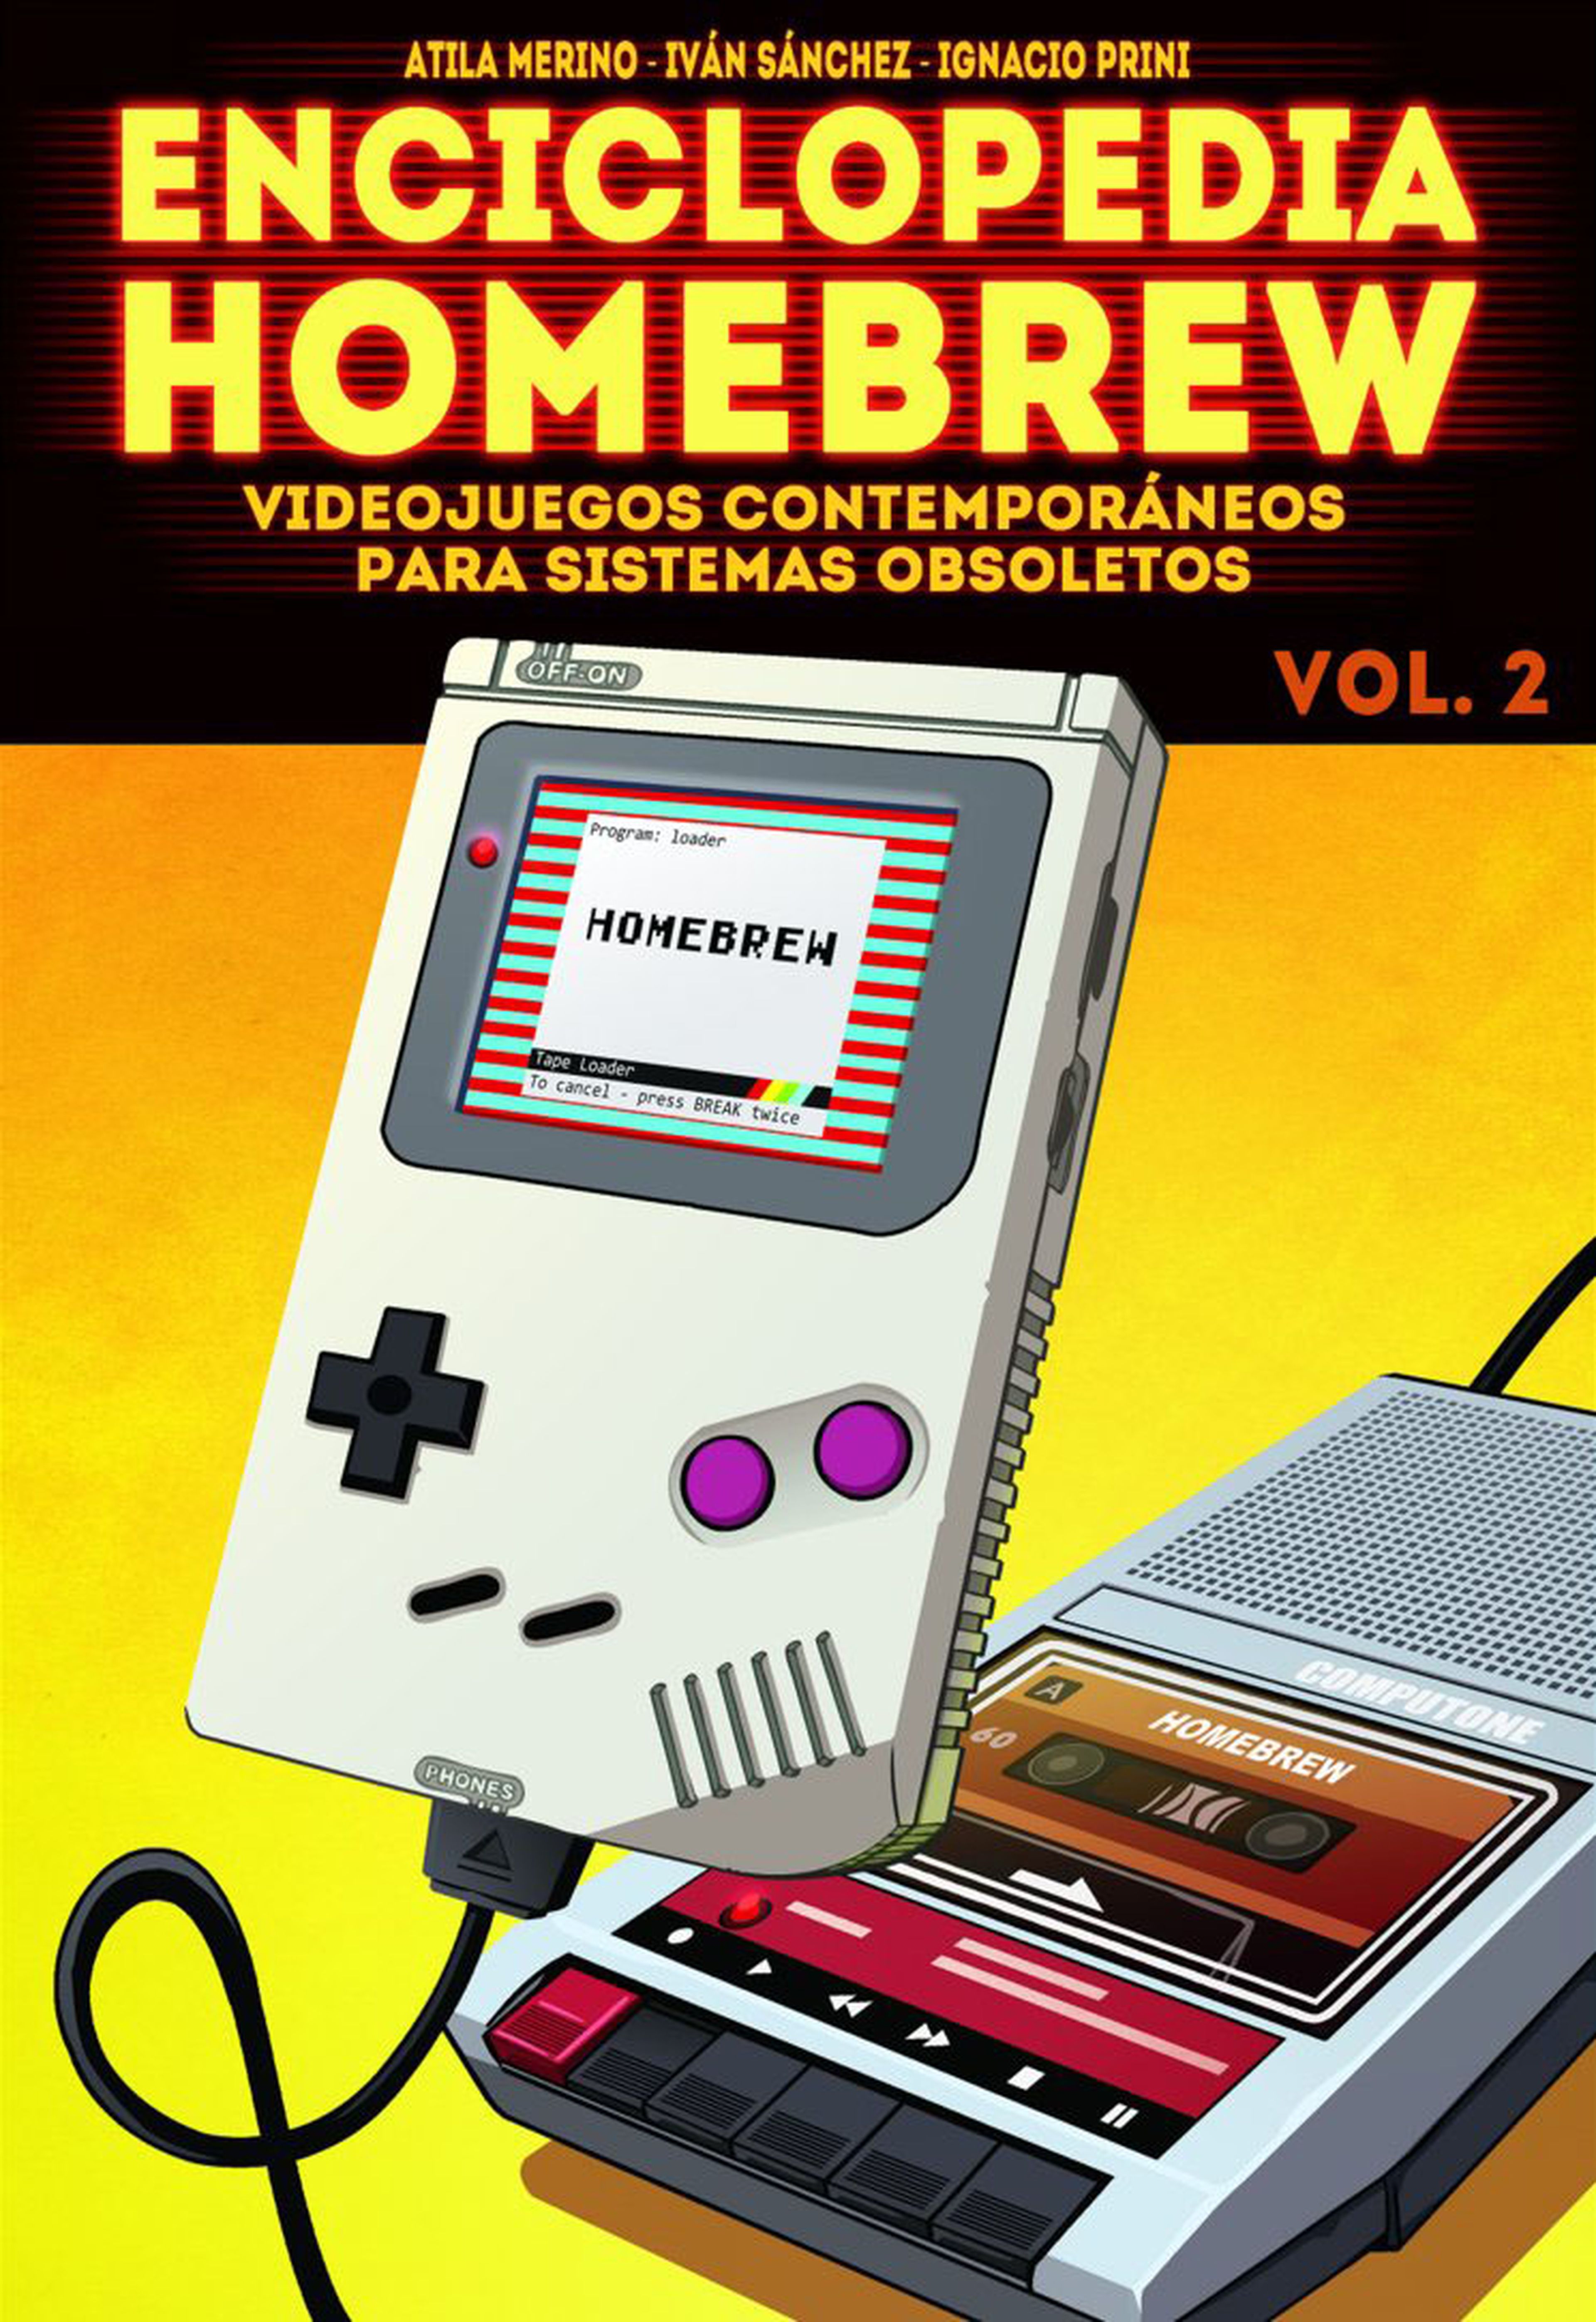 La portada del libro es obra de Bonache, el autor de Game Boy Lands.